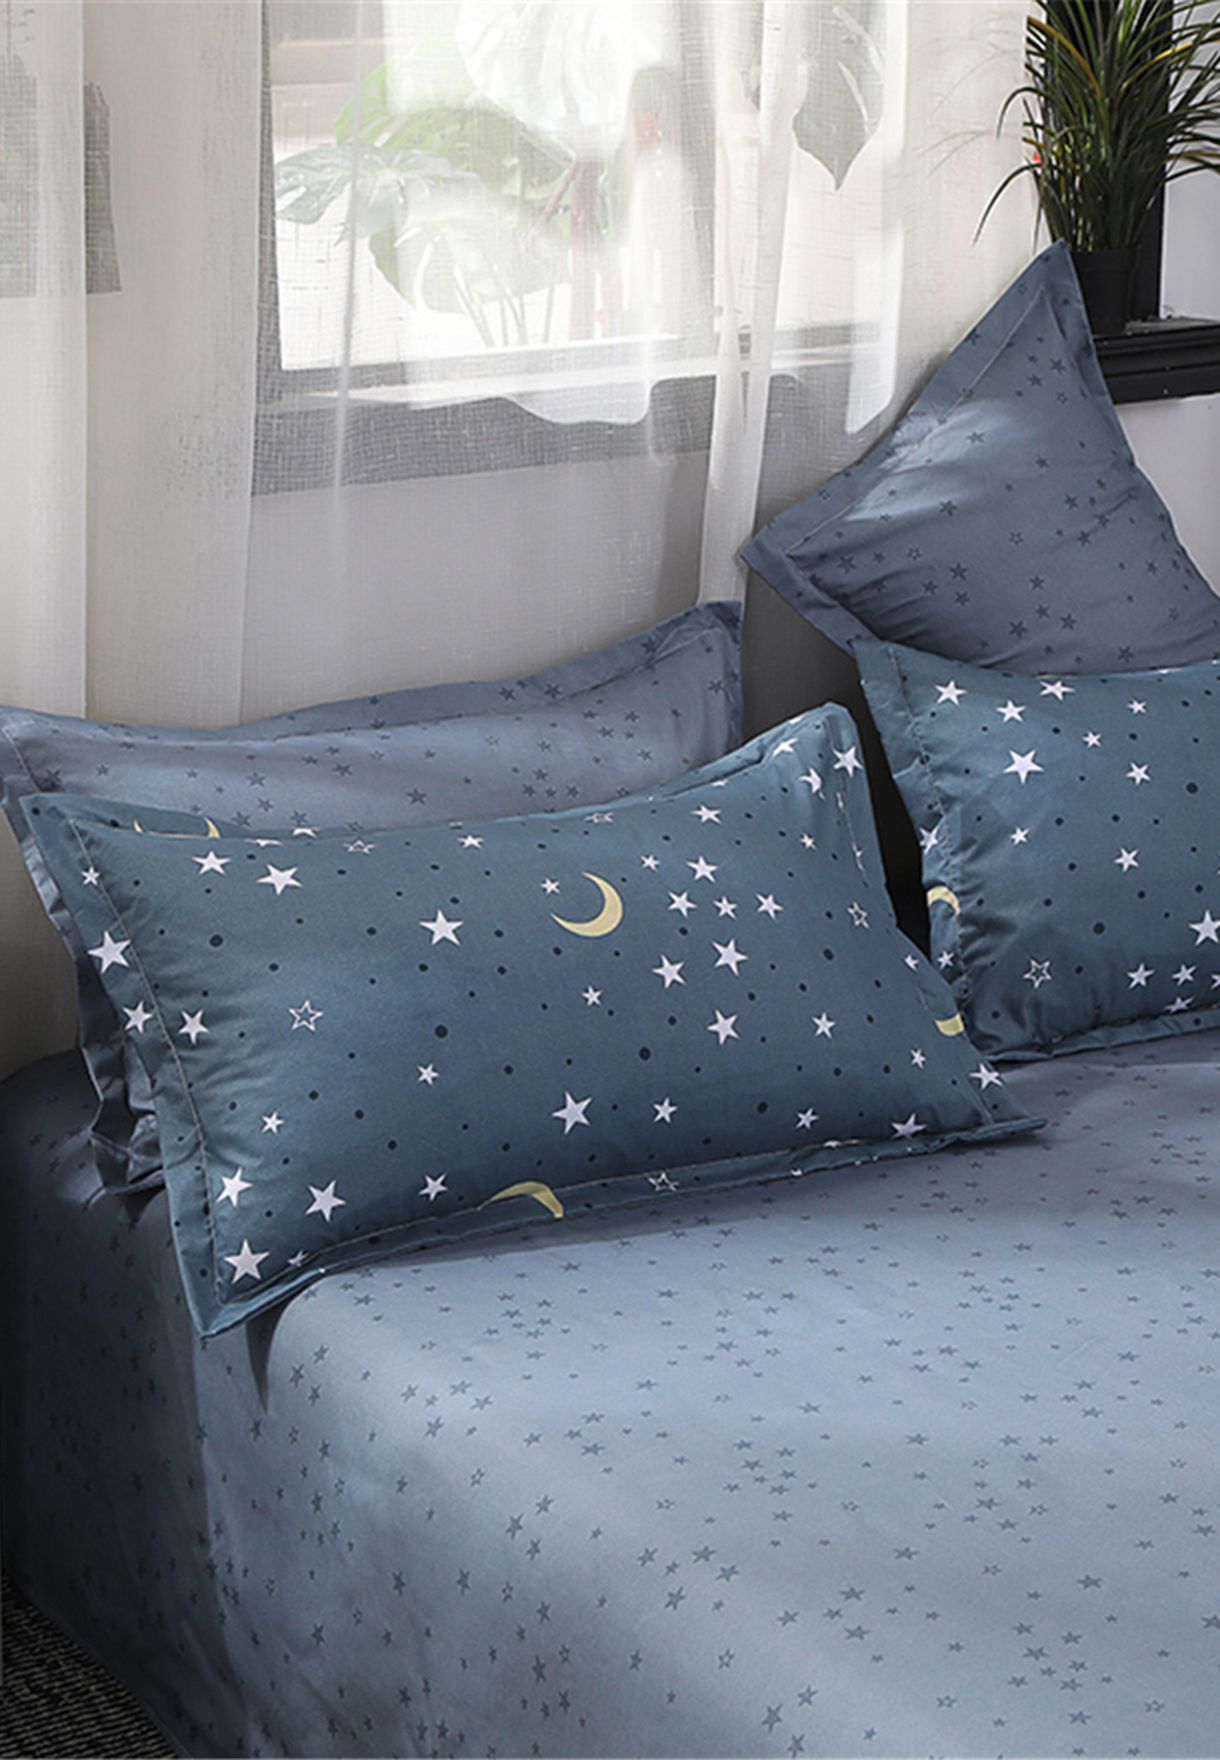 طقم سرير بطباعة نجوم وقمر - مزدوج 200x200 سم